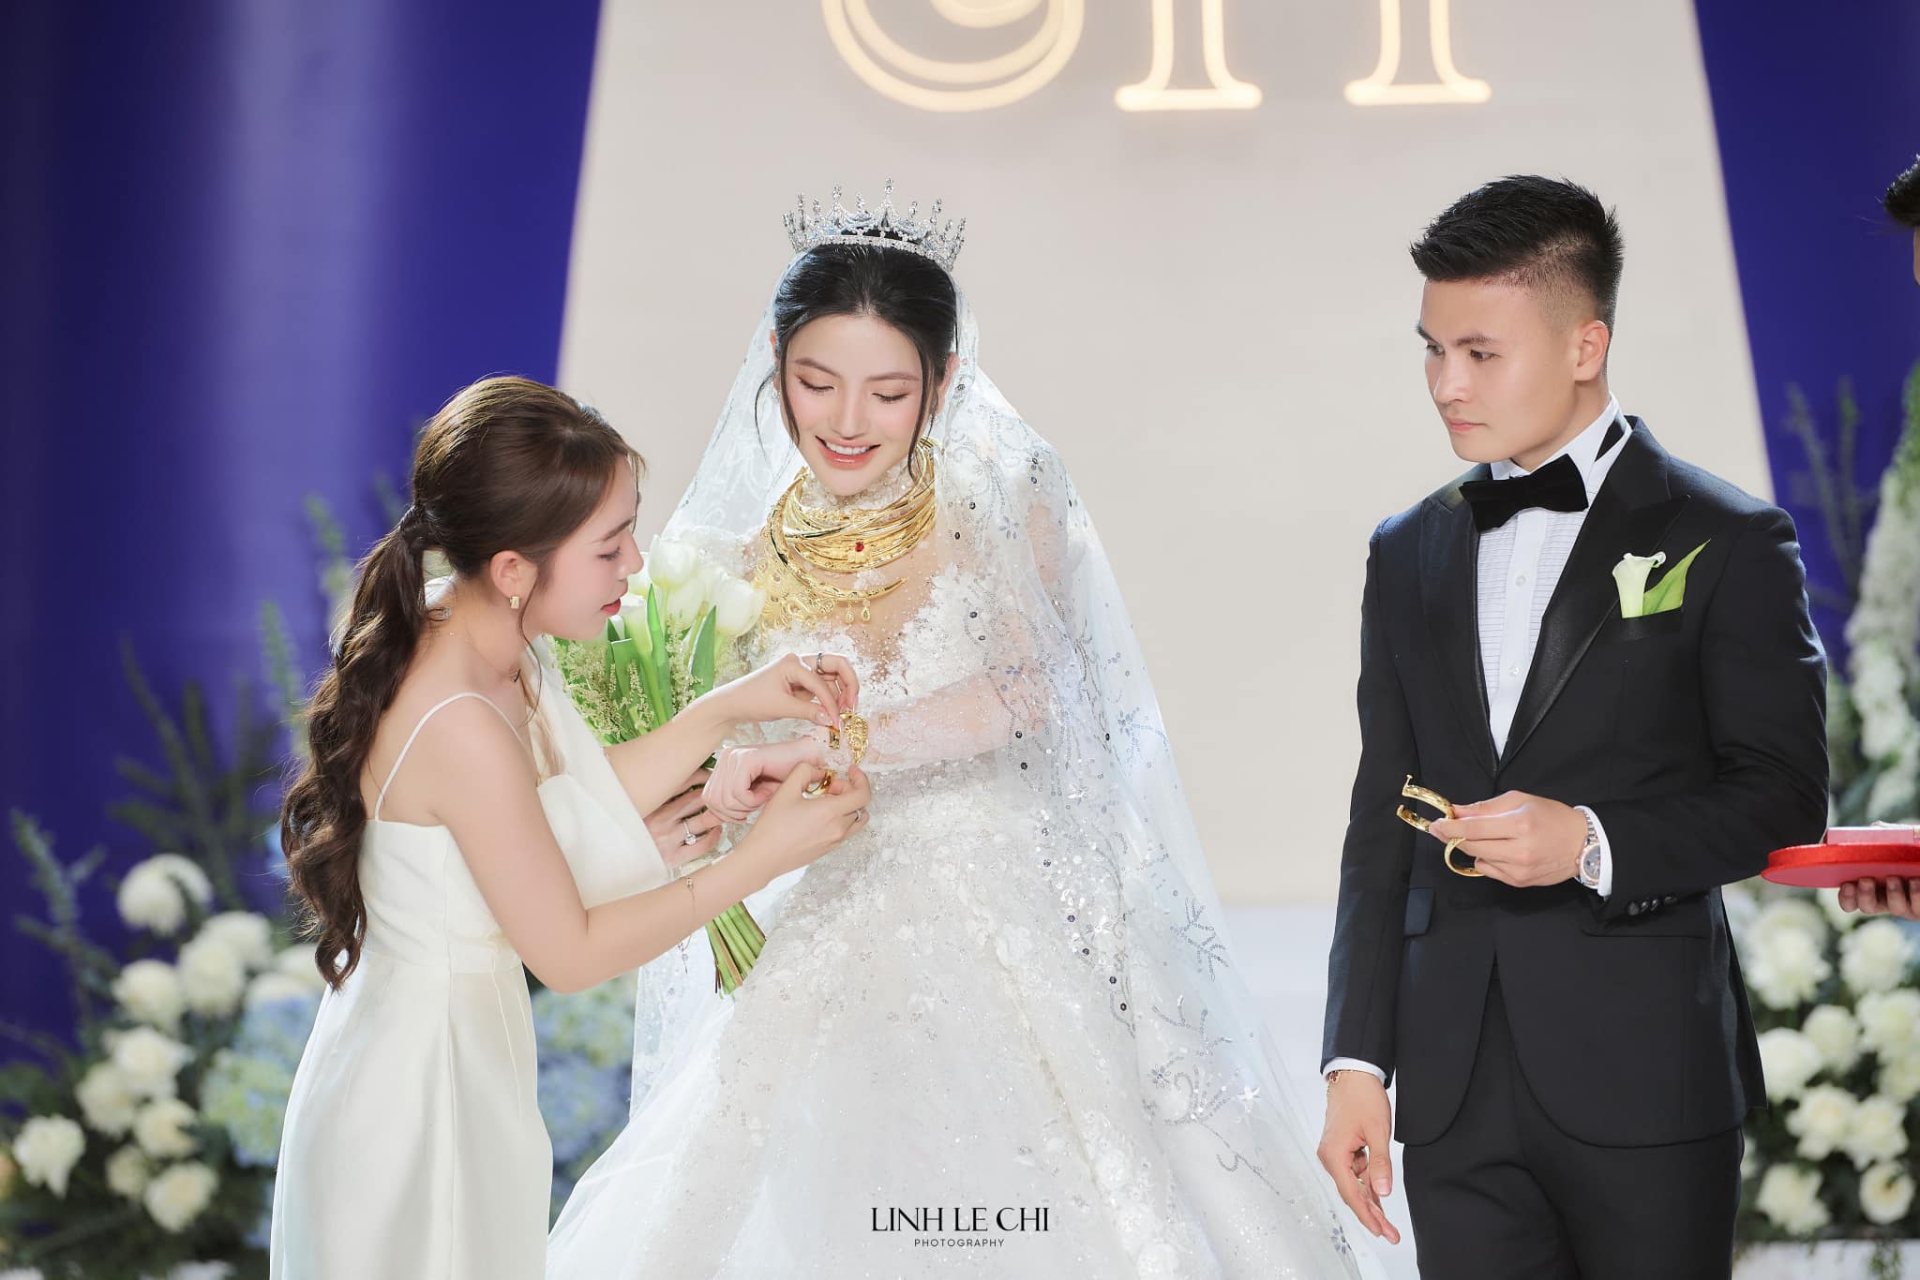 Chu Thanh Huyền phơi bày sự thật luôn che giấu Quang Hải sau đám cưới, uất ức về thời điểm yêu mà giấu nhẹm - ảnh 5